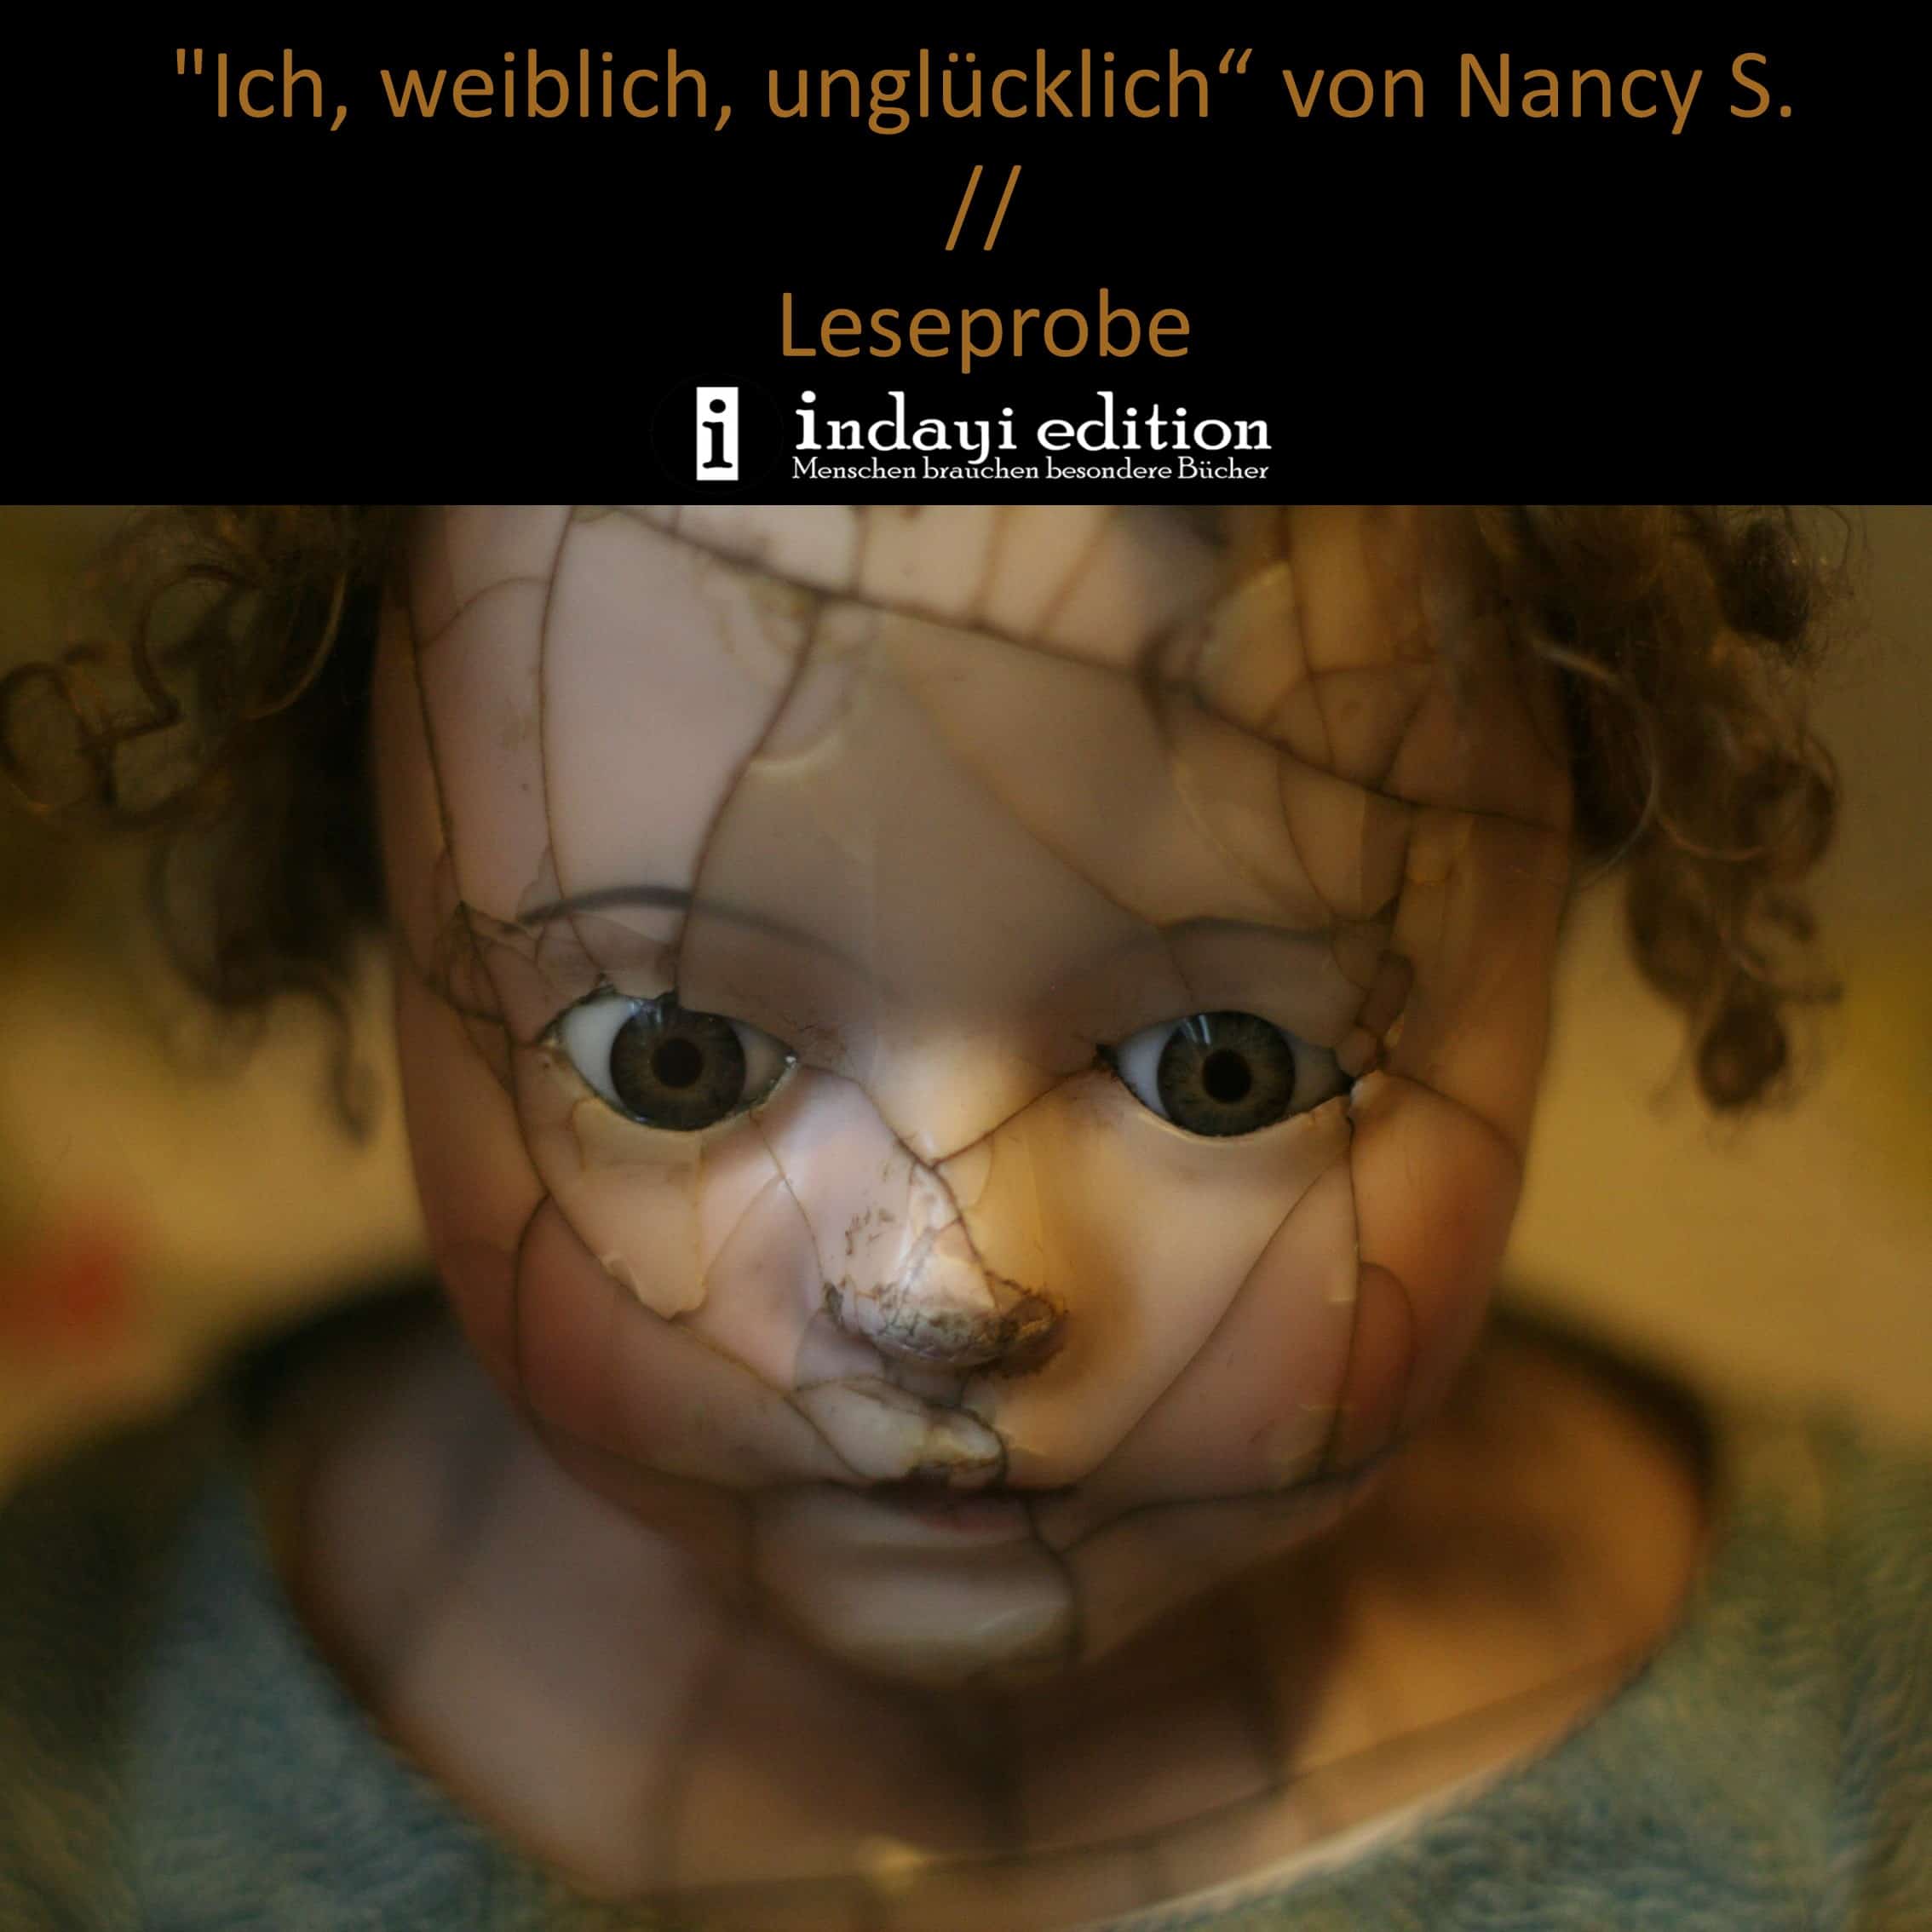 En este momento estás viendo “Ich, weiblich, unglücklich“ von Nancy S. // Leseprobe